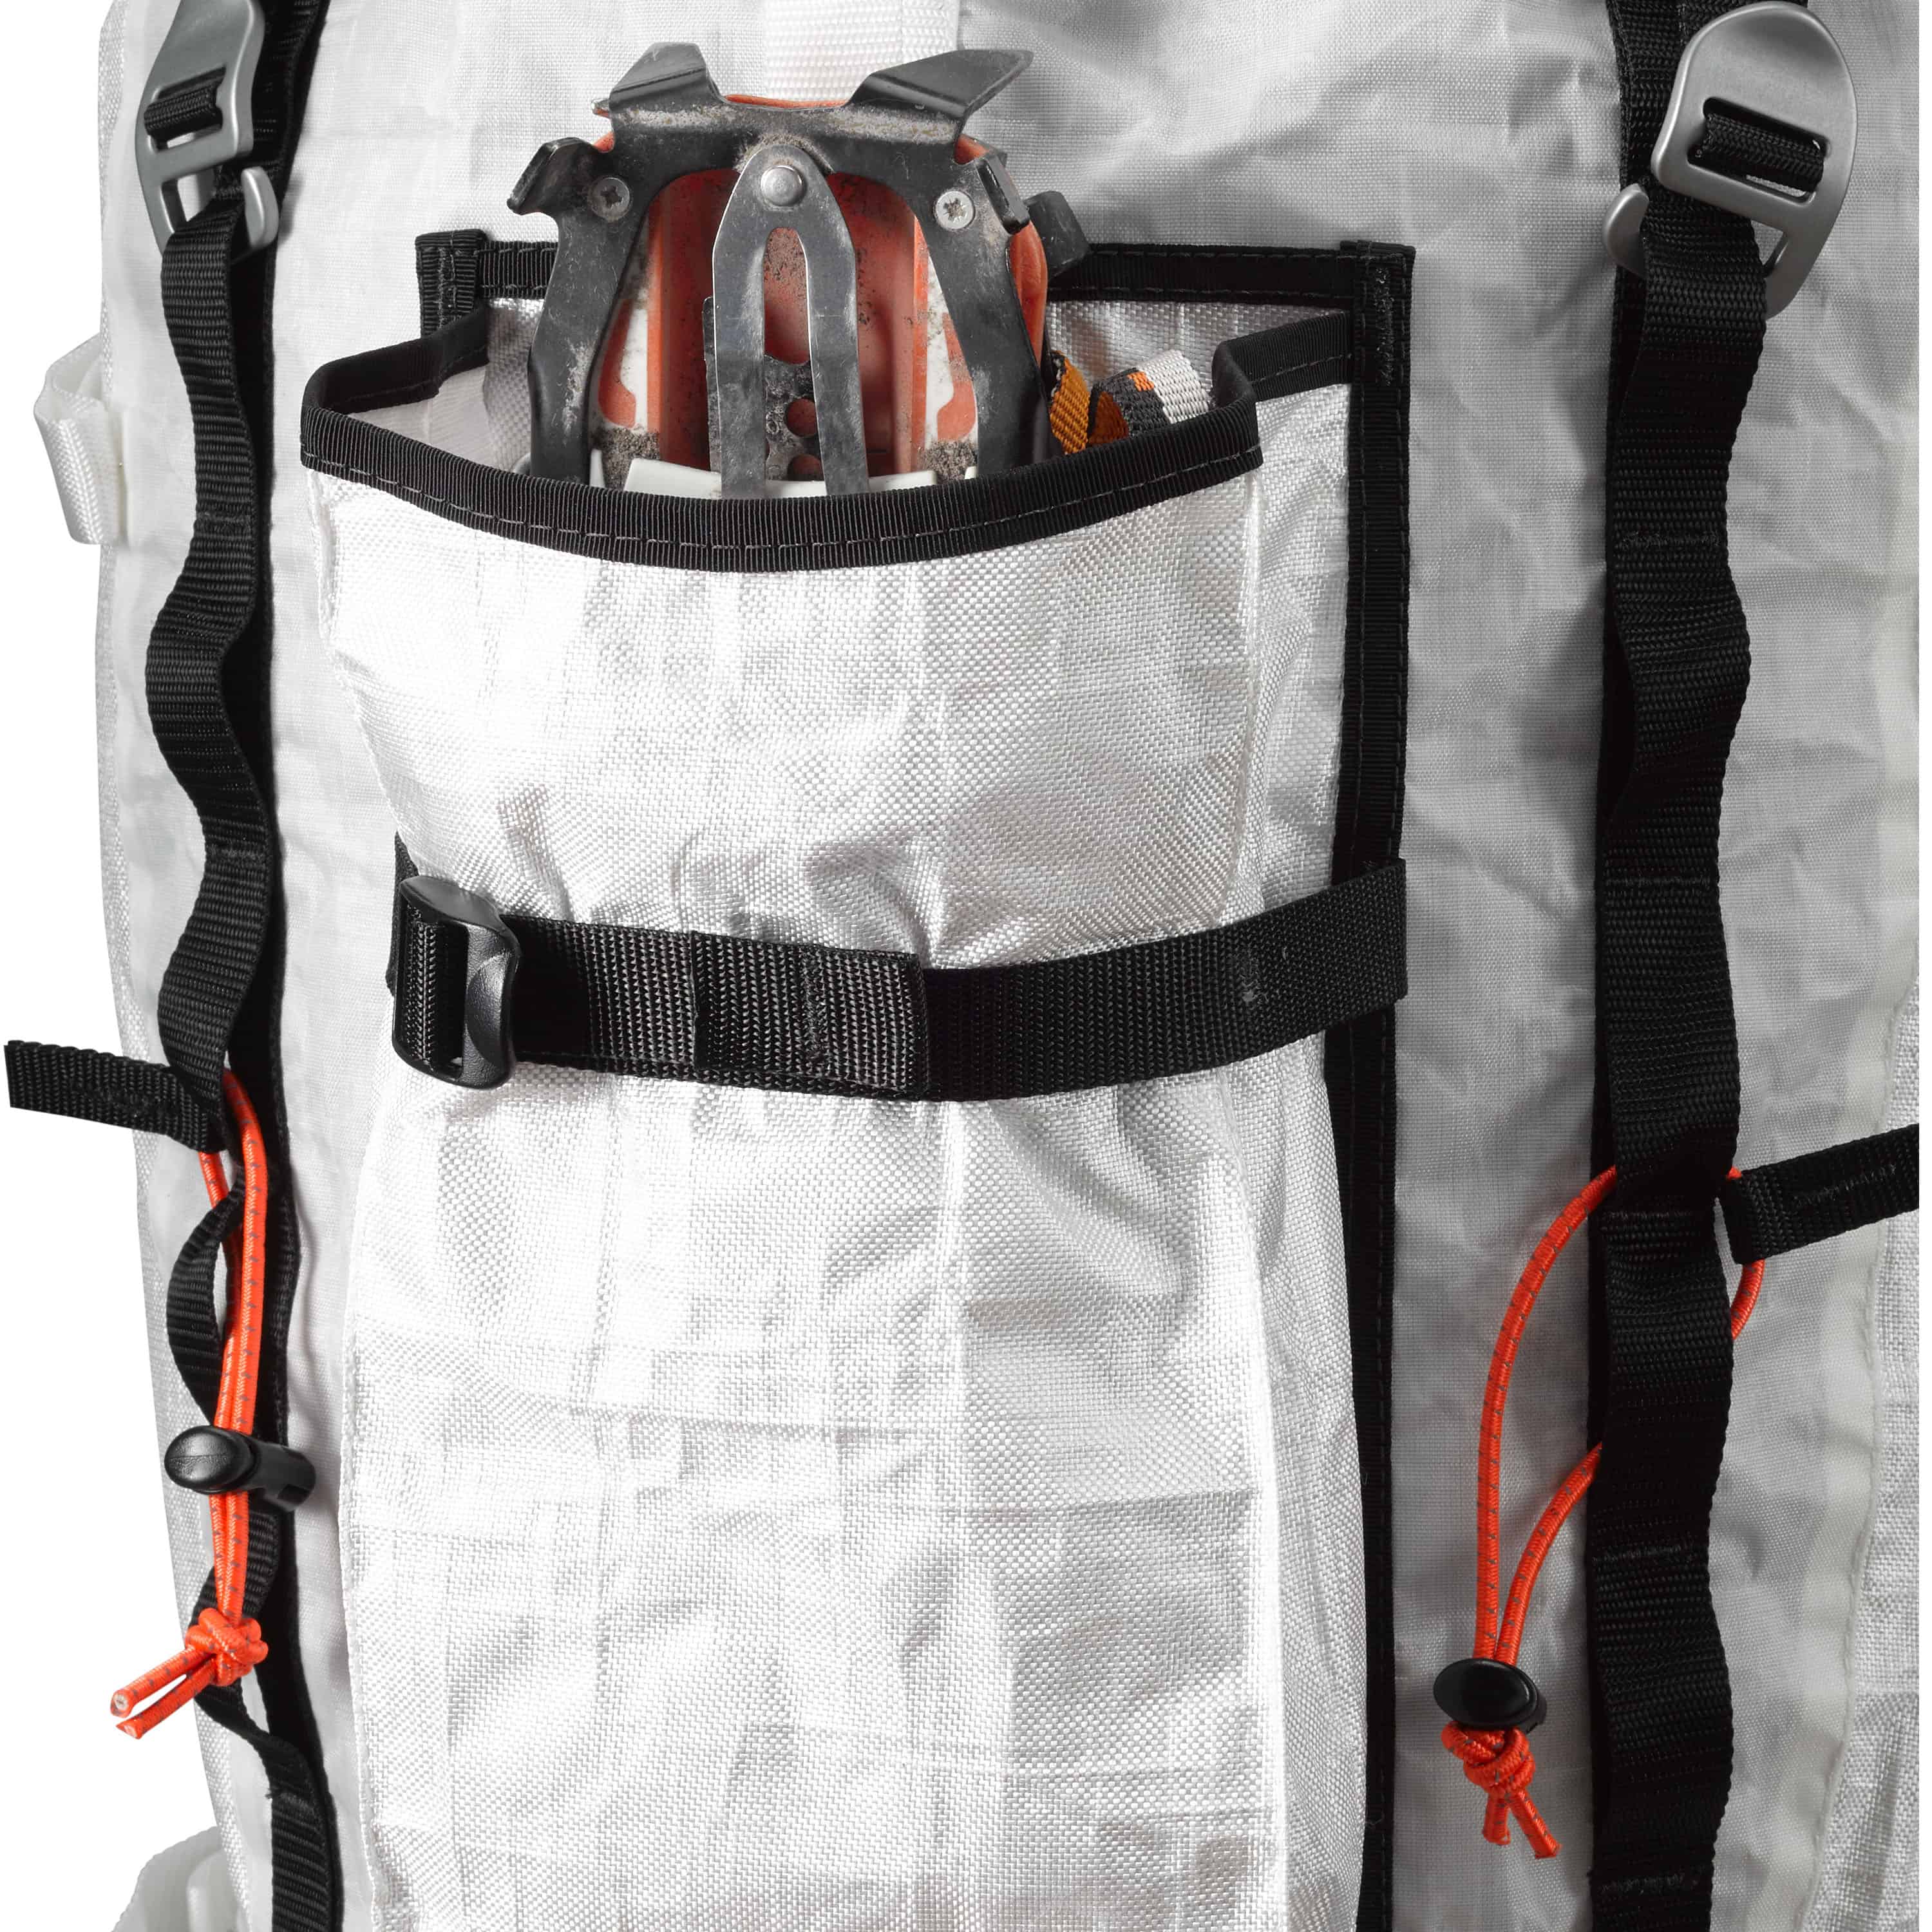 Backpack Shoulder Straps - Diamond Brand Gear